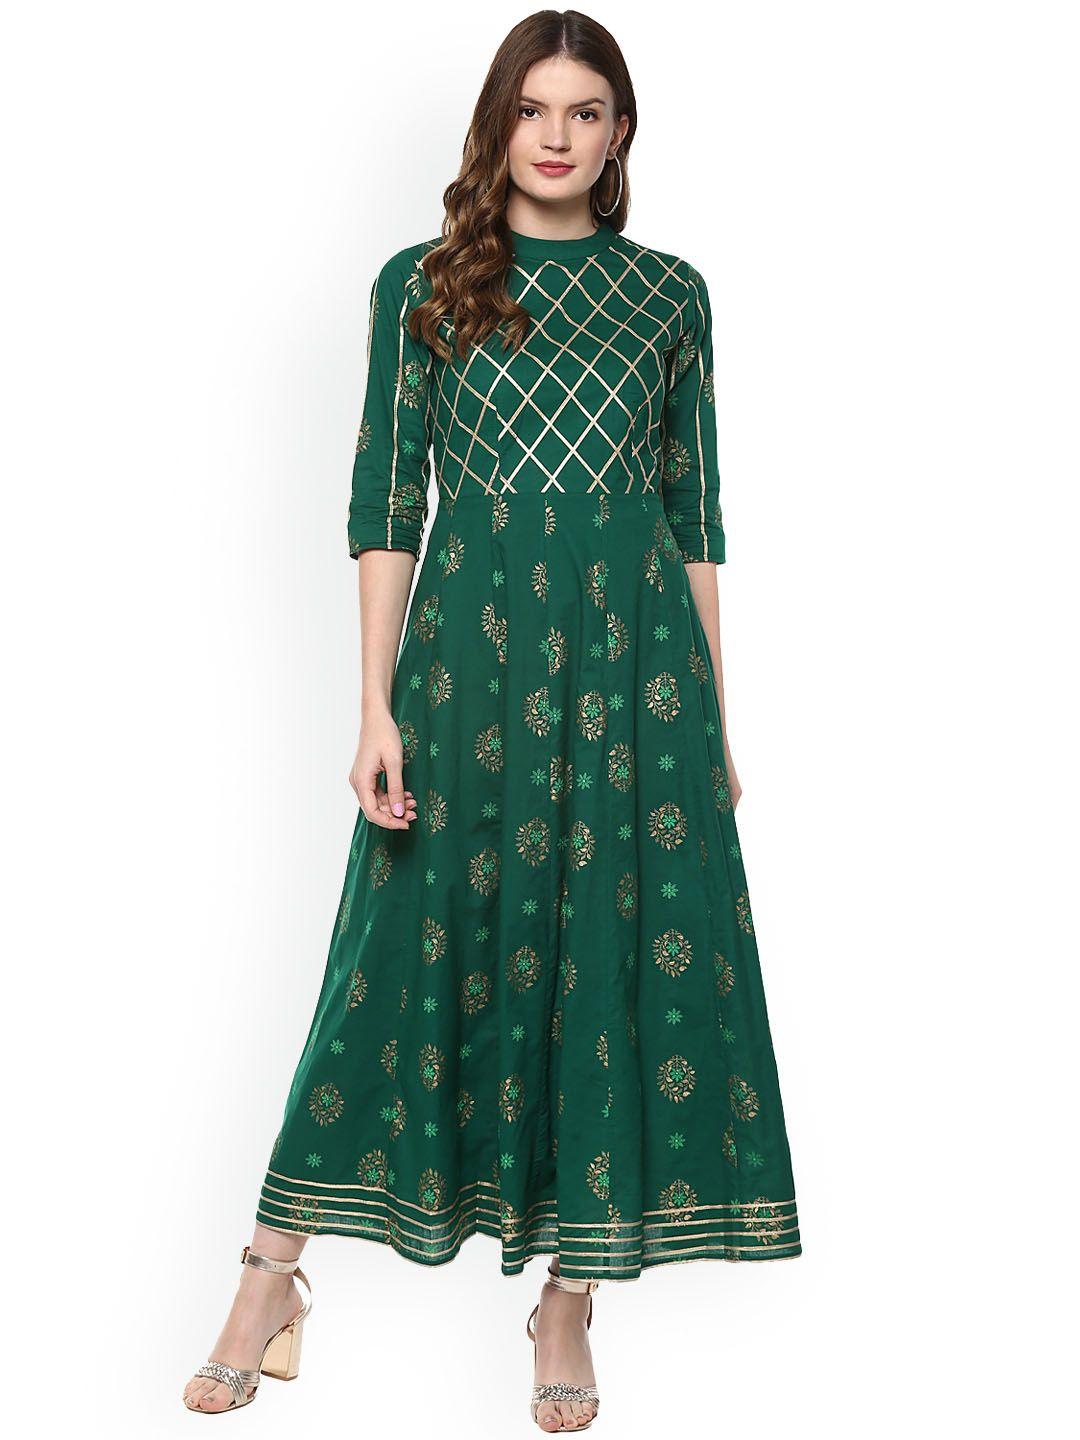 idalia-green-&-gold-toned-ethnic-motifs-ethnic-maxi-dress